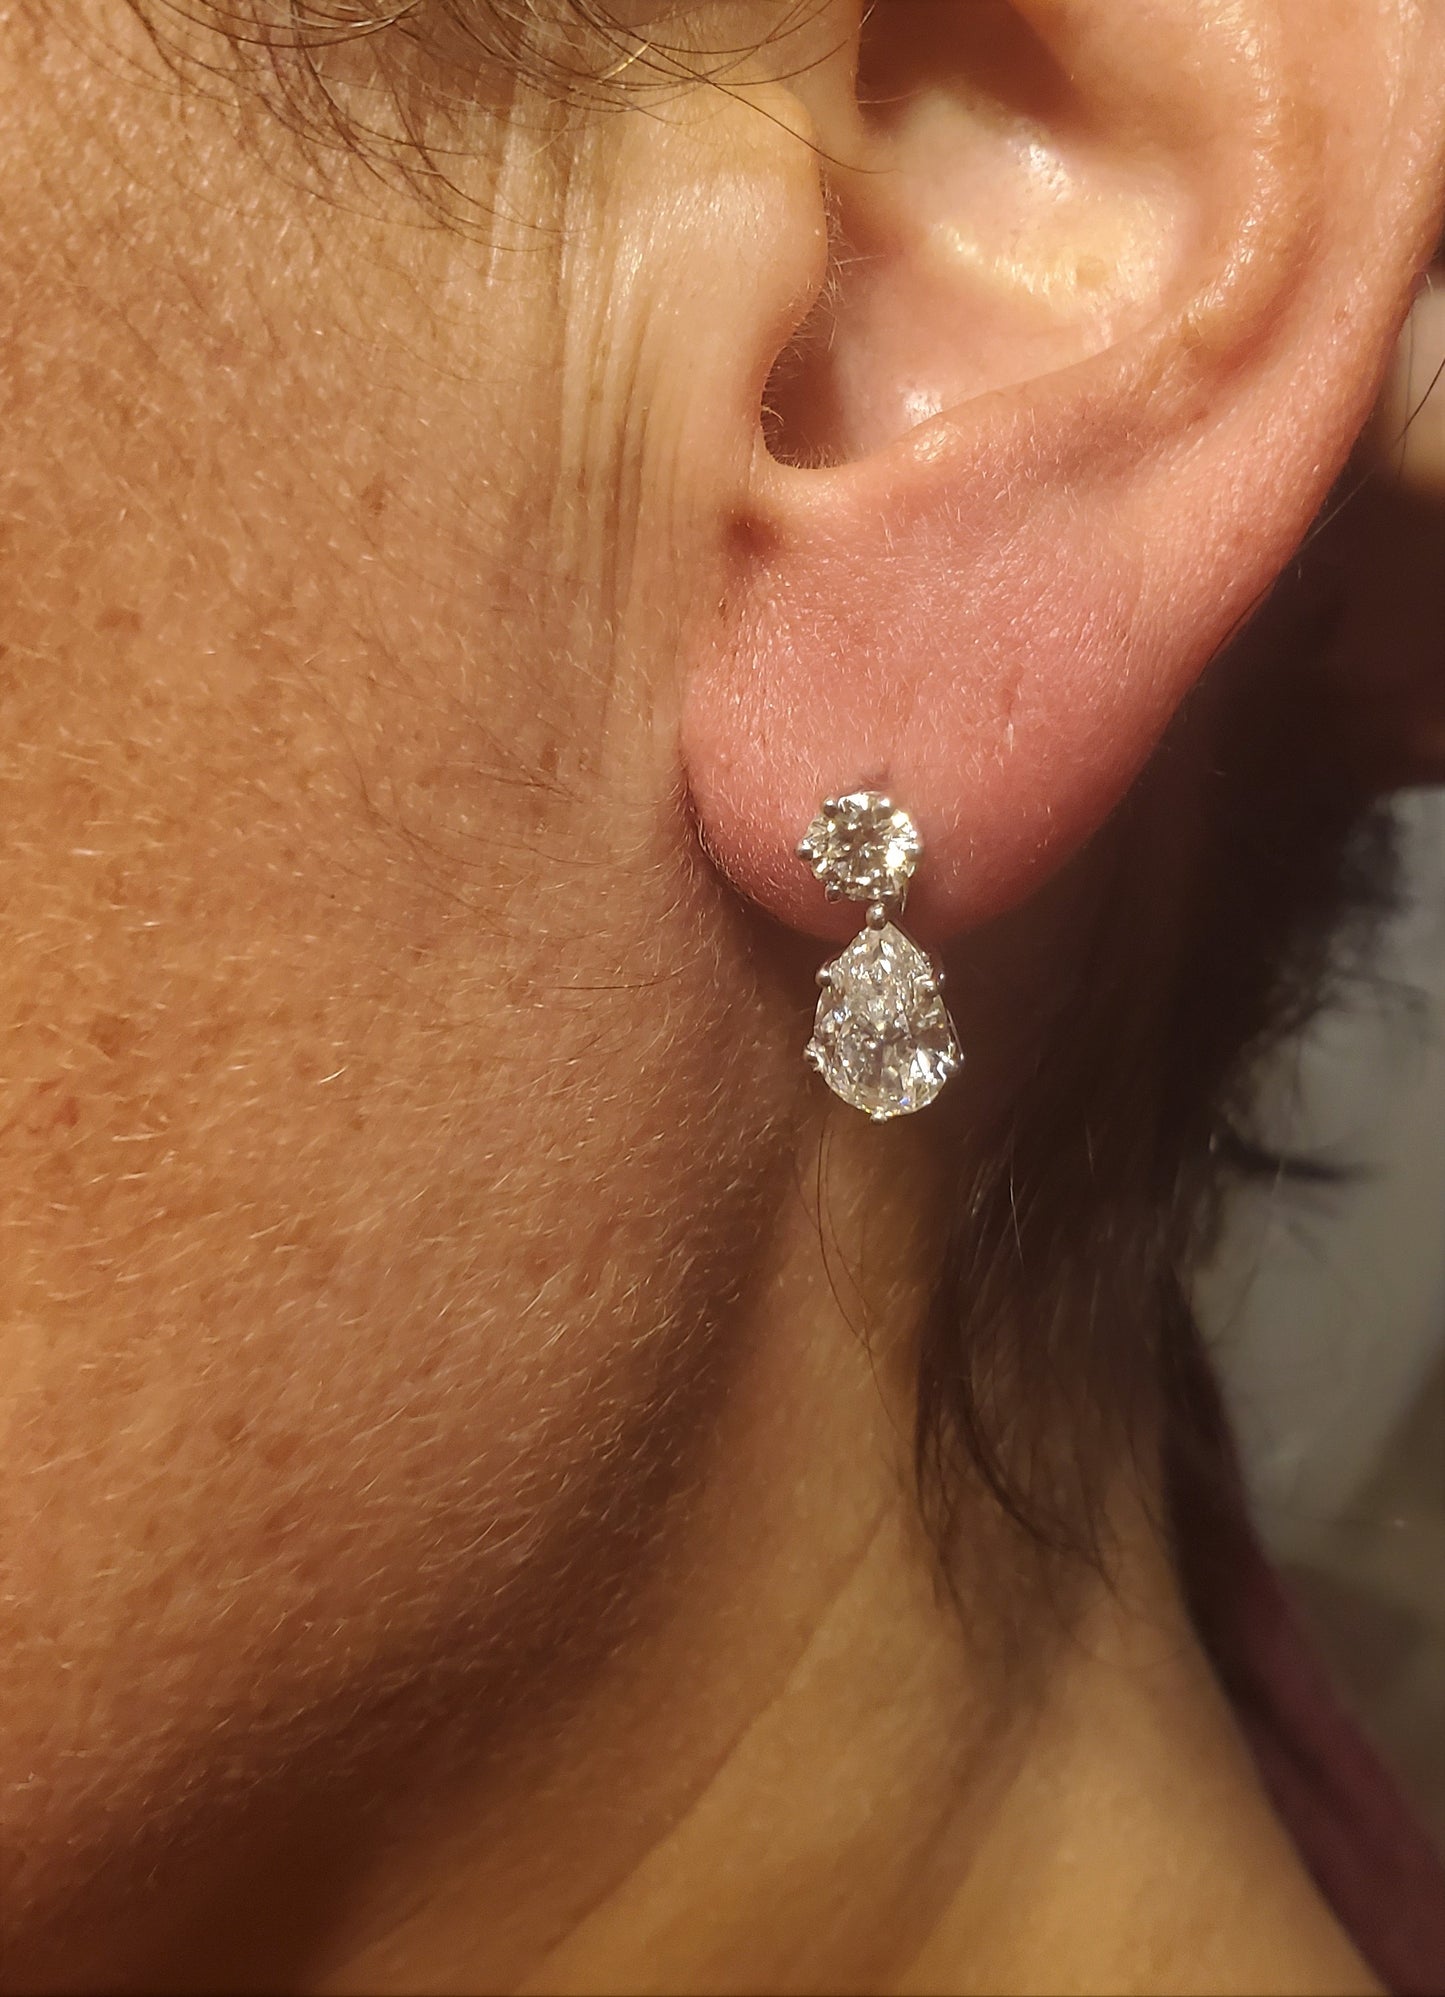 18K White Gold Diamond Drop Earrings